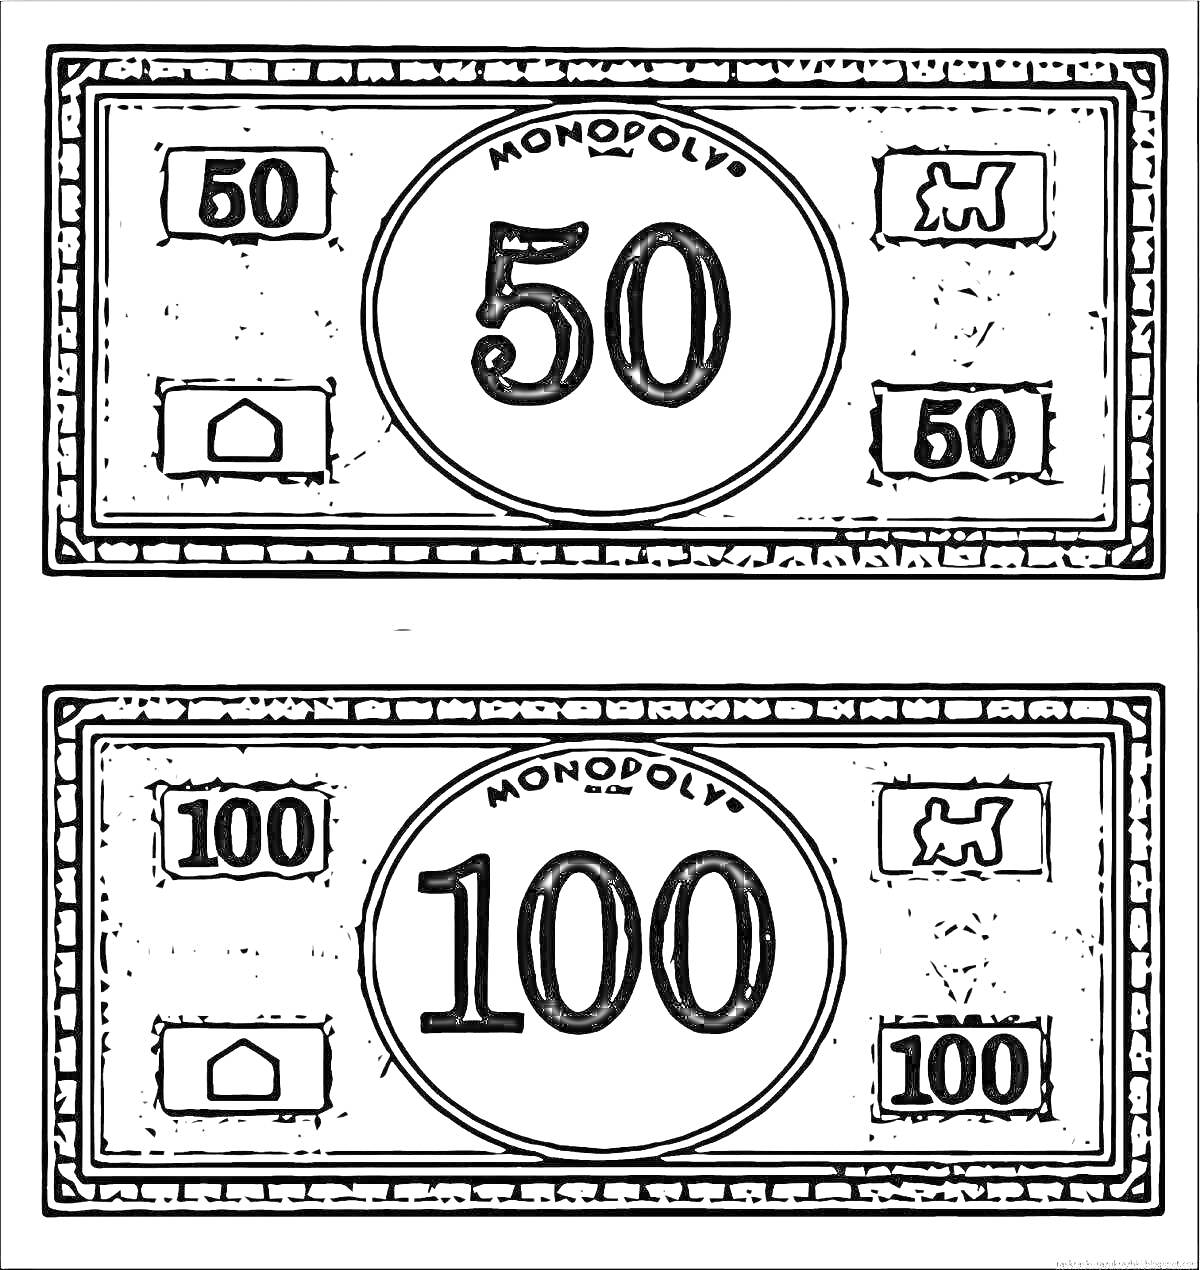 Деньги из Монополии: банкноты 50 и 100, с изображениями дома и фигуры собаки